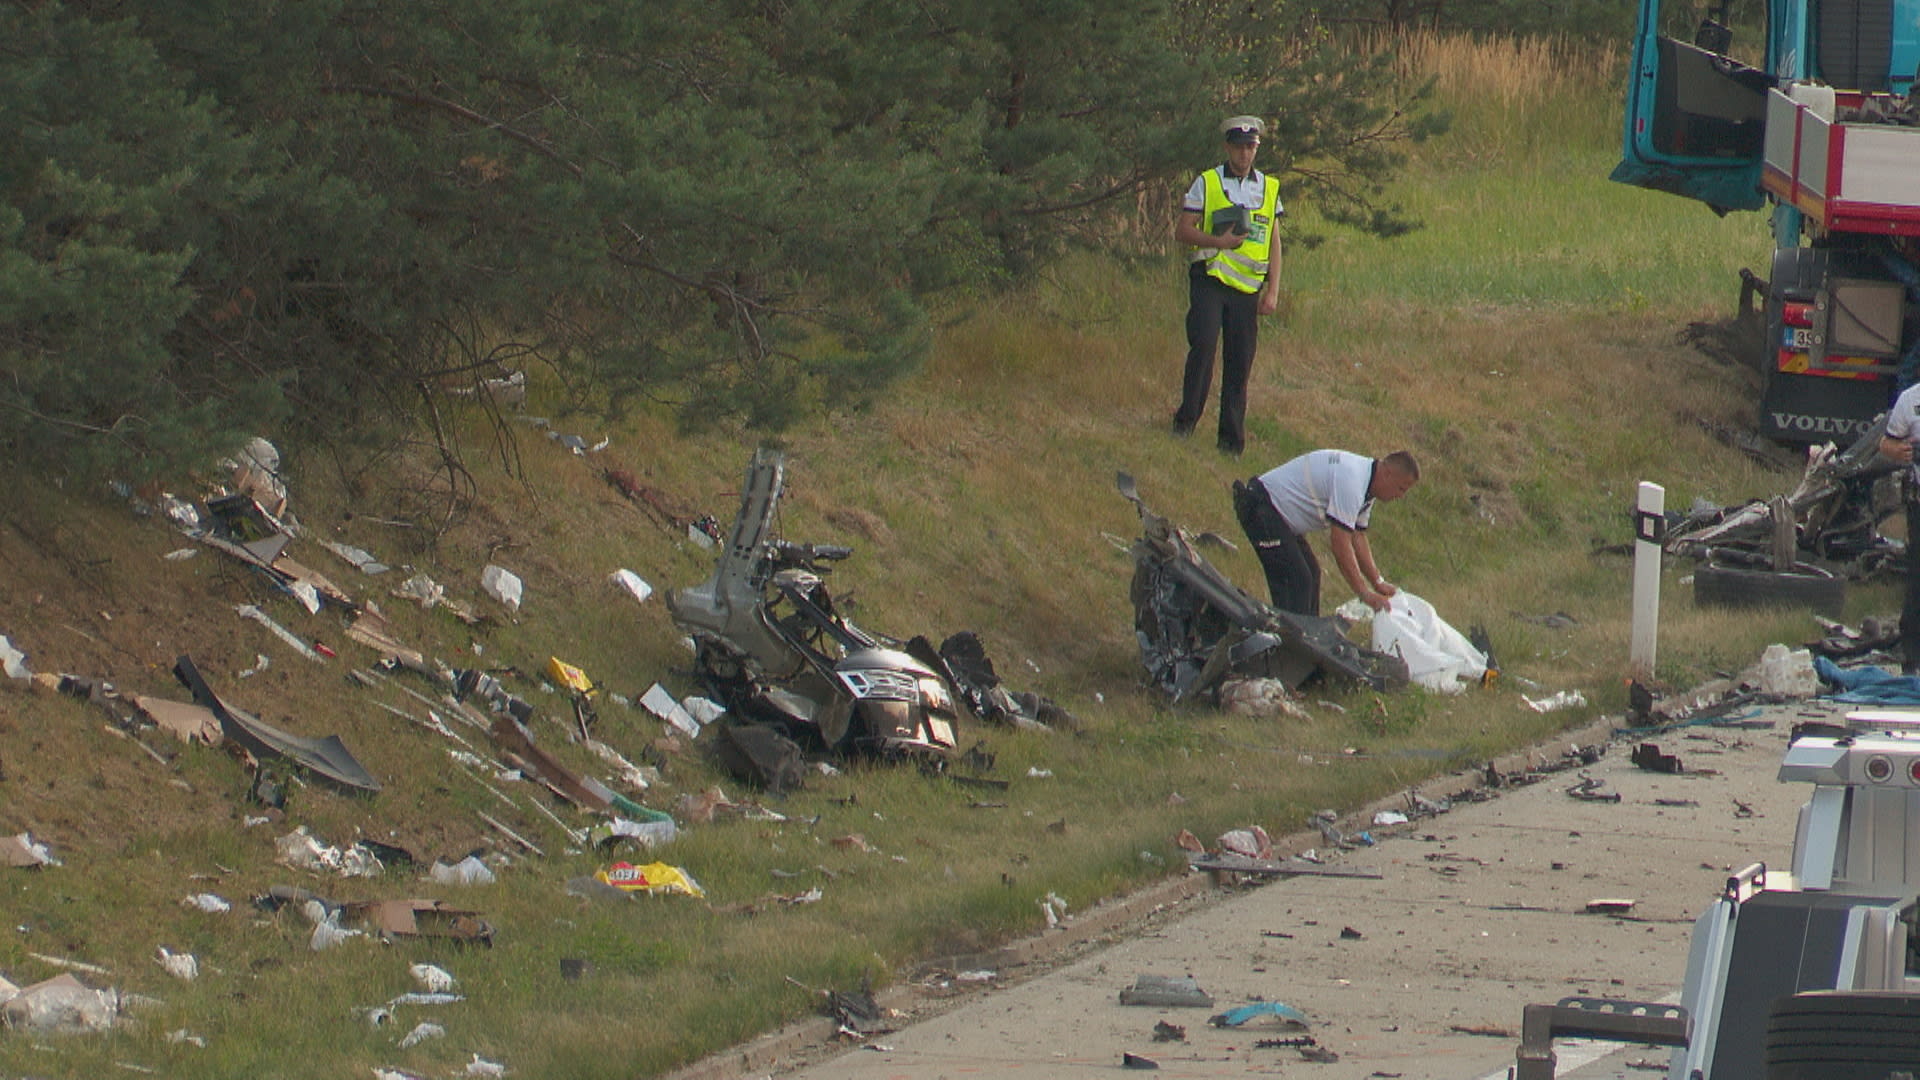 Kamion u Benešovic prorazil svodidla a smetl osobní auto